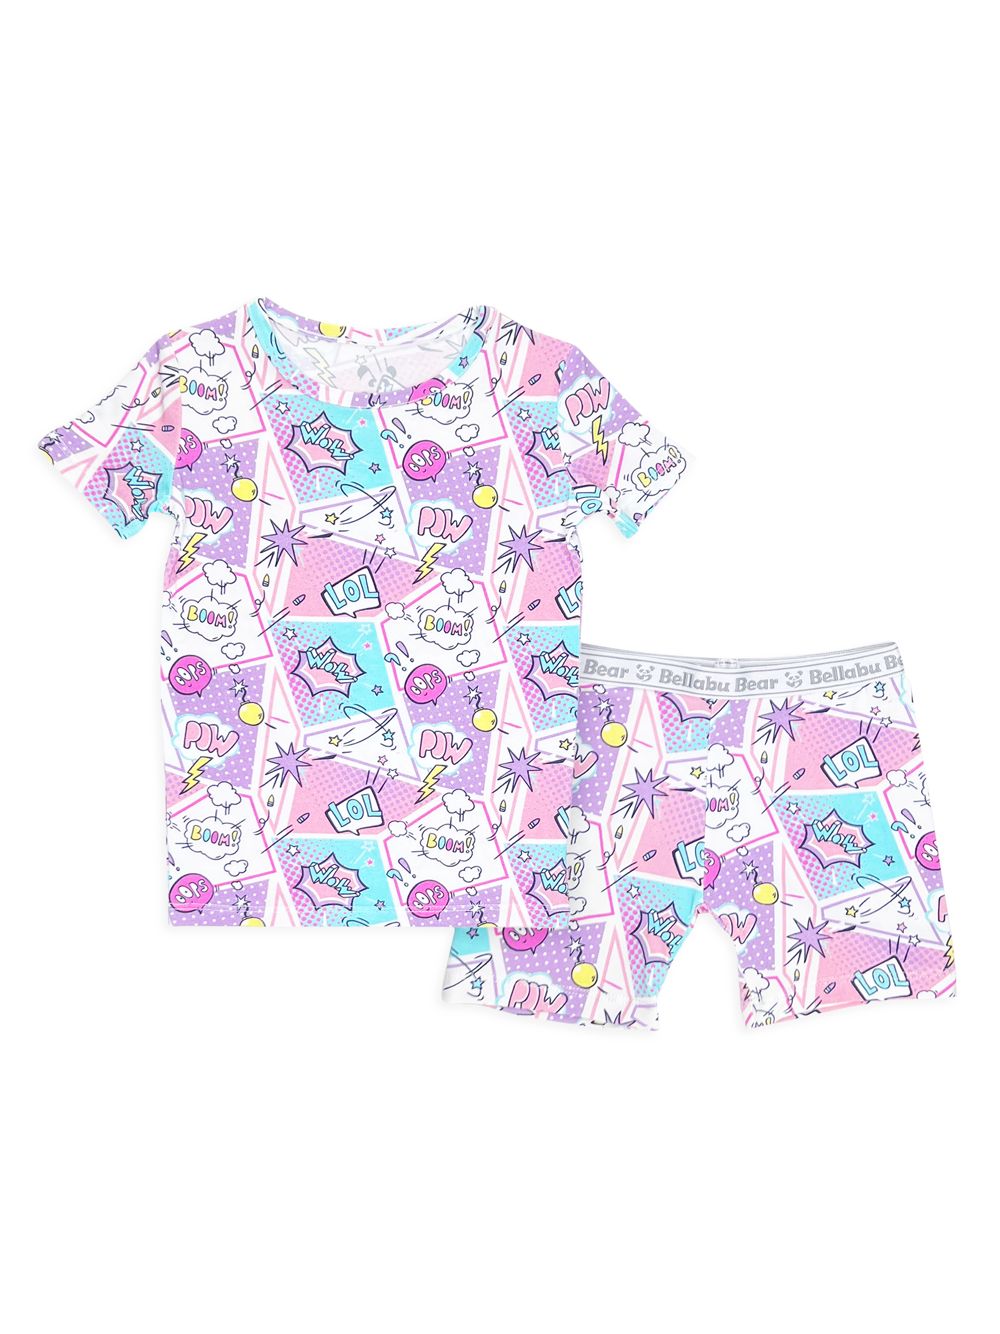 цена Пижамные шорты с принтом комиксов для маленьких девочек, маленьких девочек Bellabu Bear